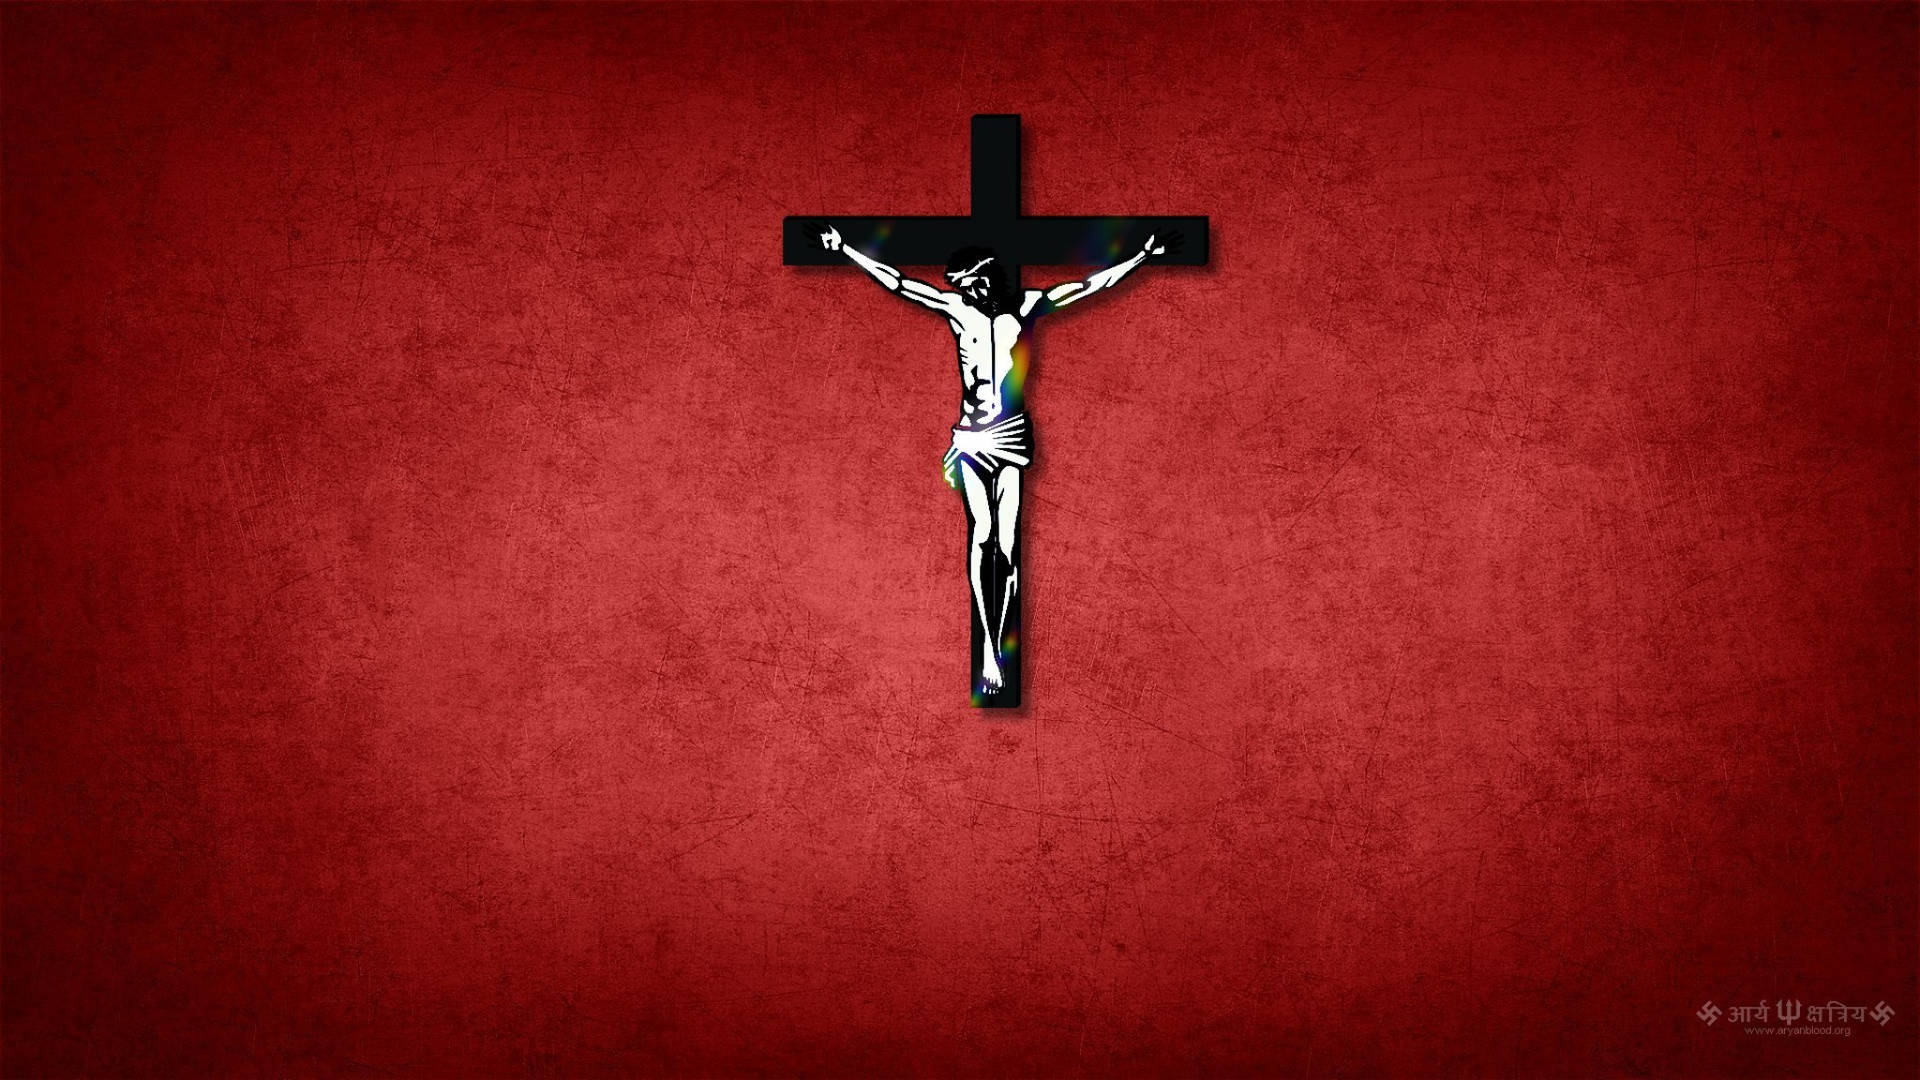 Free Jesus On Cross Wallpaper Downloads, [100+] Jesus On Cross Wallpapers  for FREE 